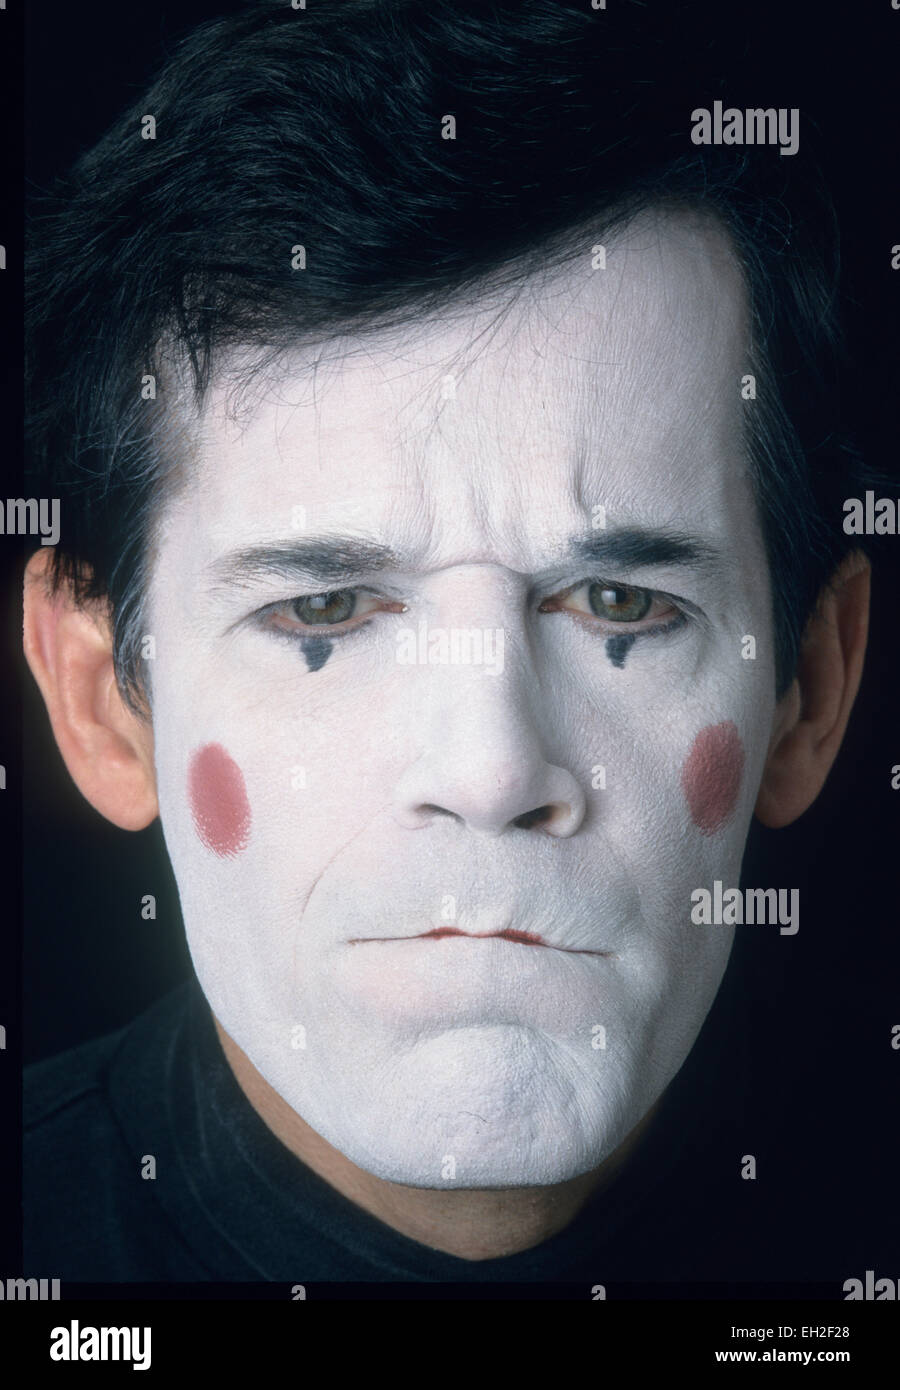 Mime, maschio, nel volto bianco, visualizzazione di rabbia e risentimento Foto Stock